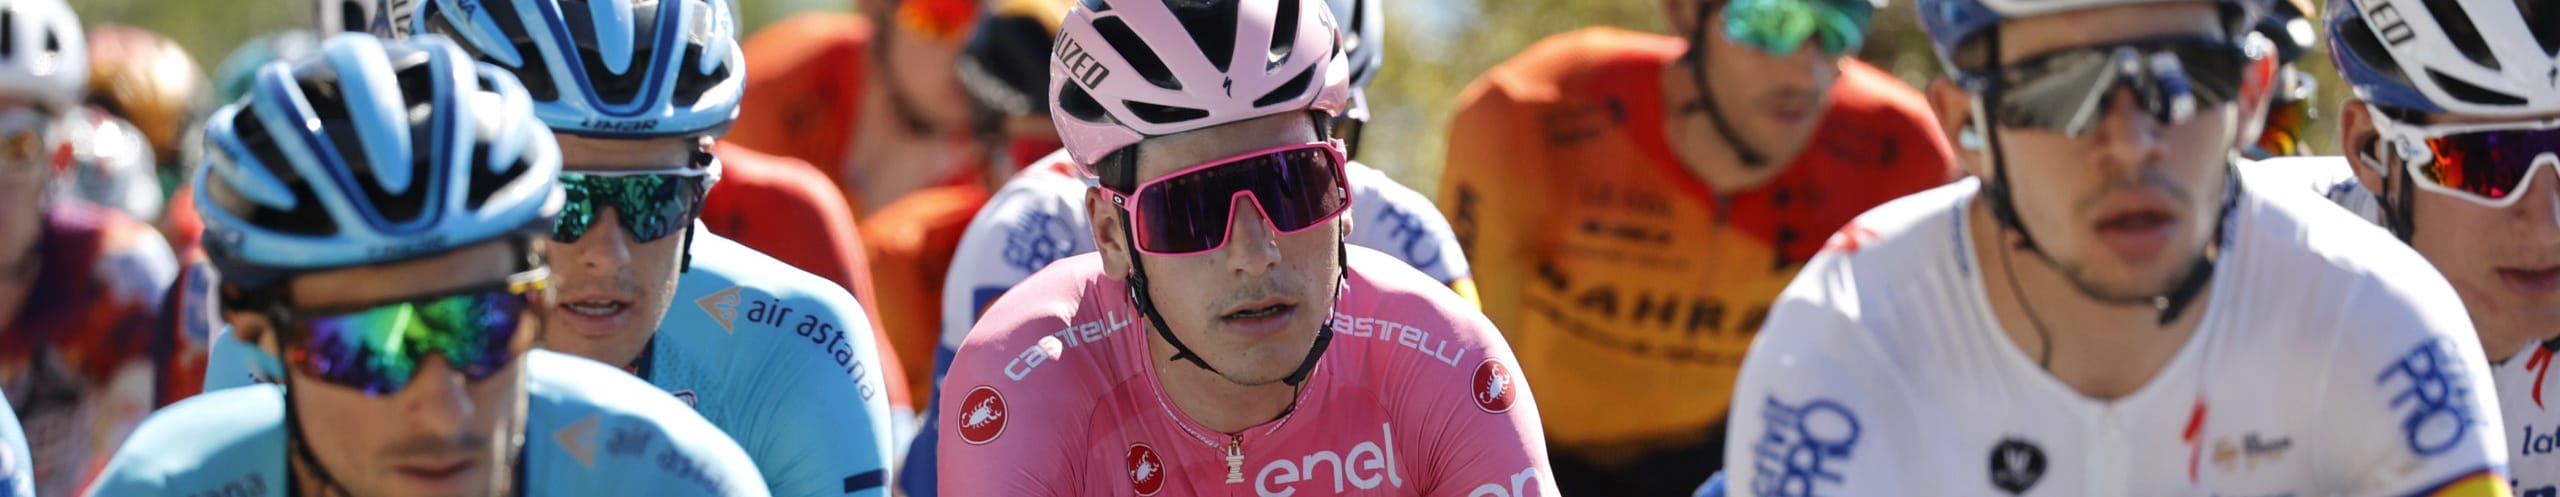 Giro d'Italia 2020, quote e favoriti per la tappa 9: si torna in montagna